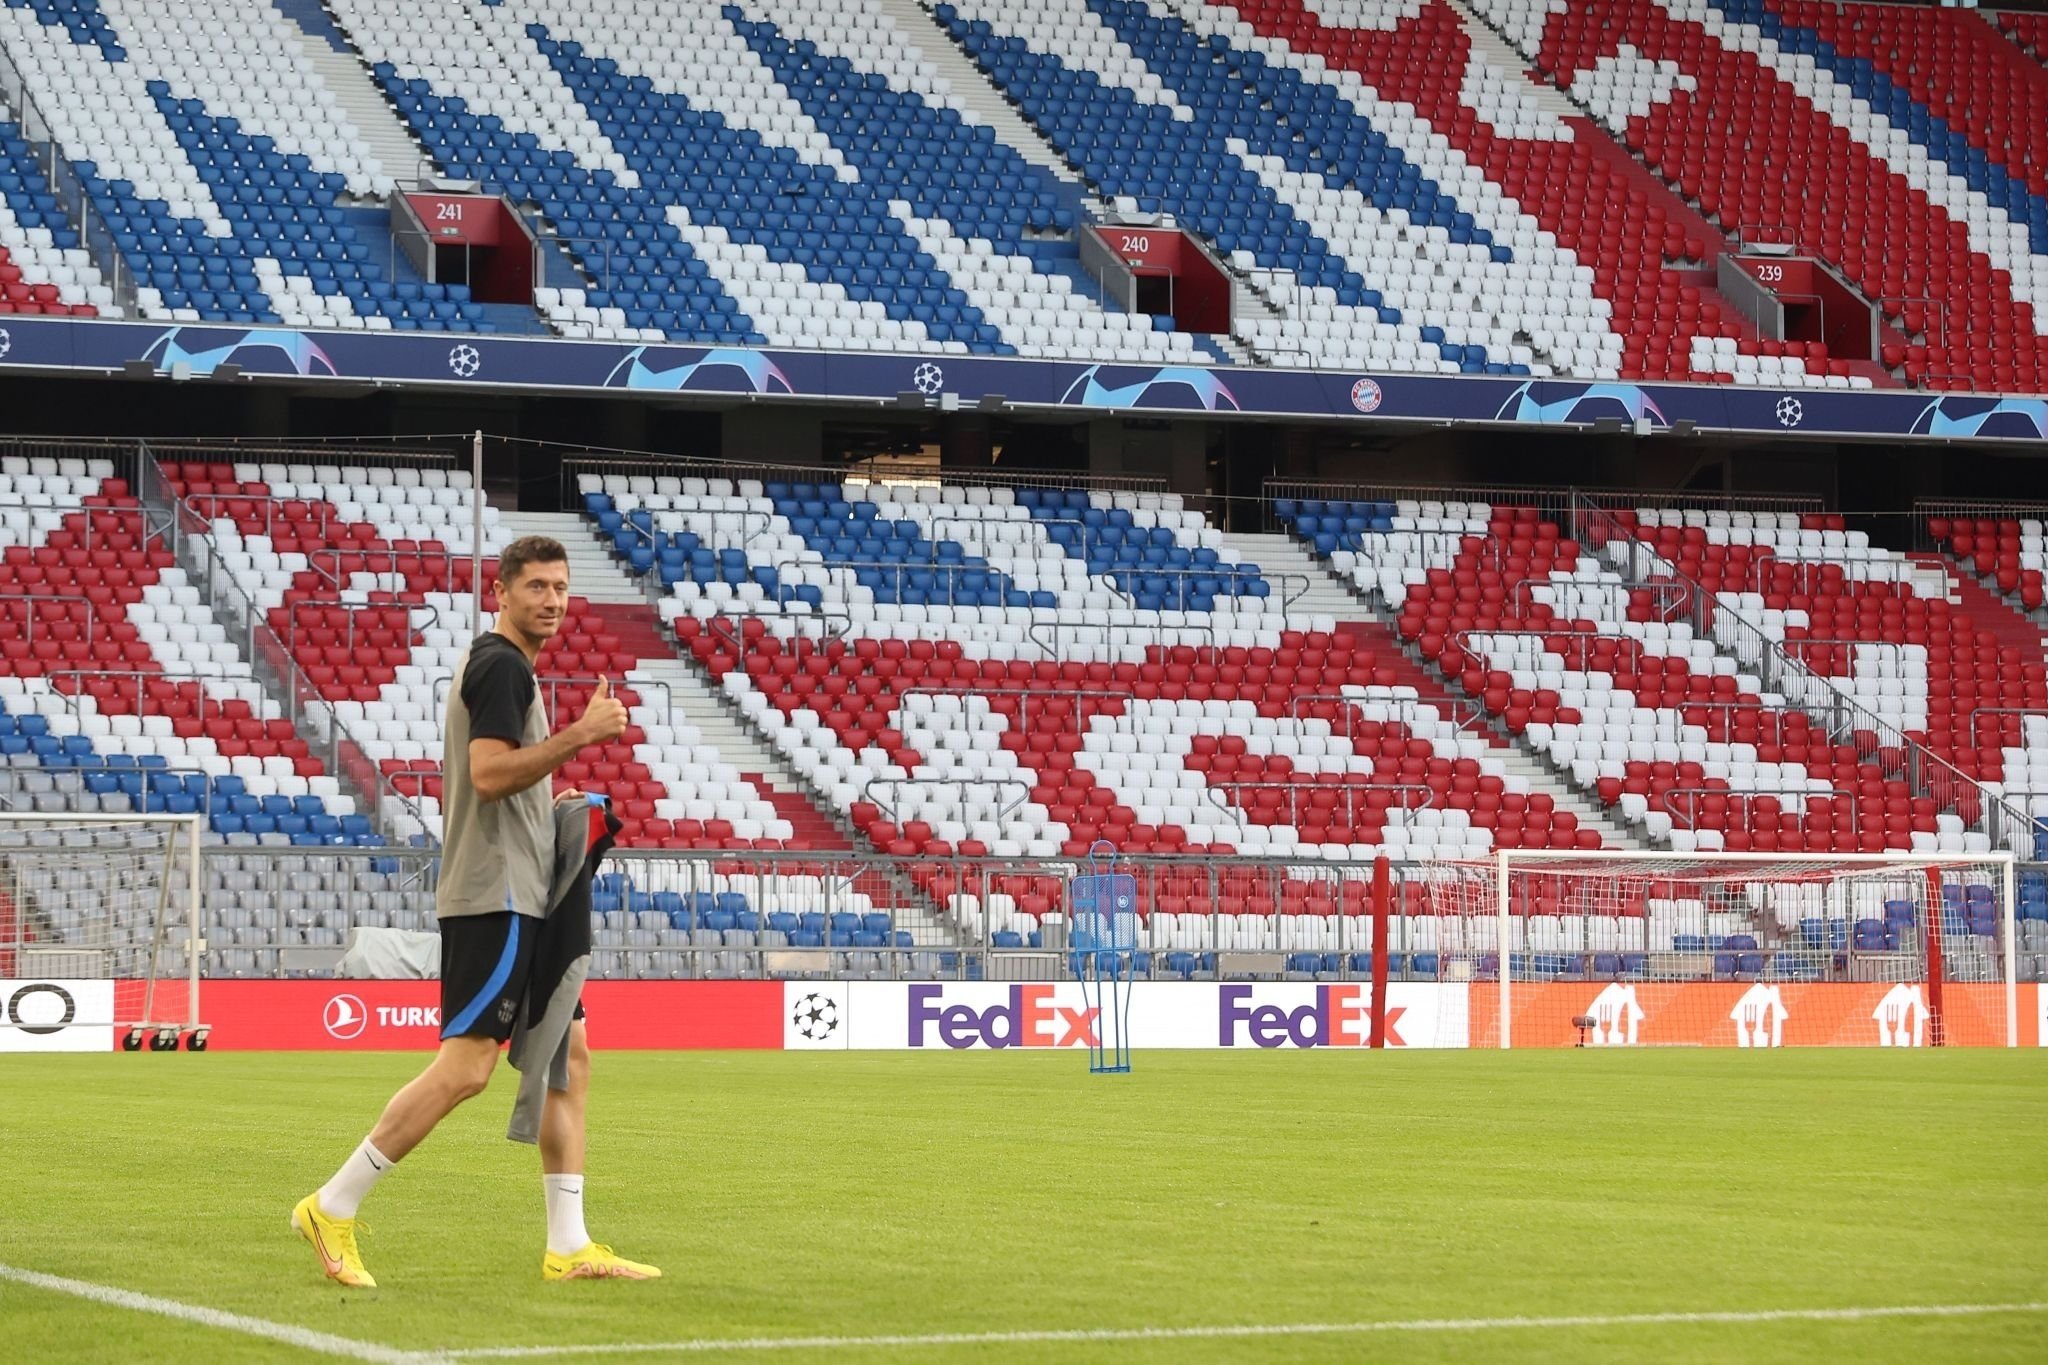 Lewandowski déjà de retour à l’Allianz Arena, voici les premières images du Polonais (PHOTOS)